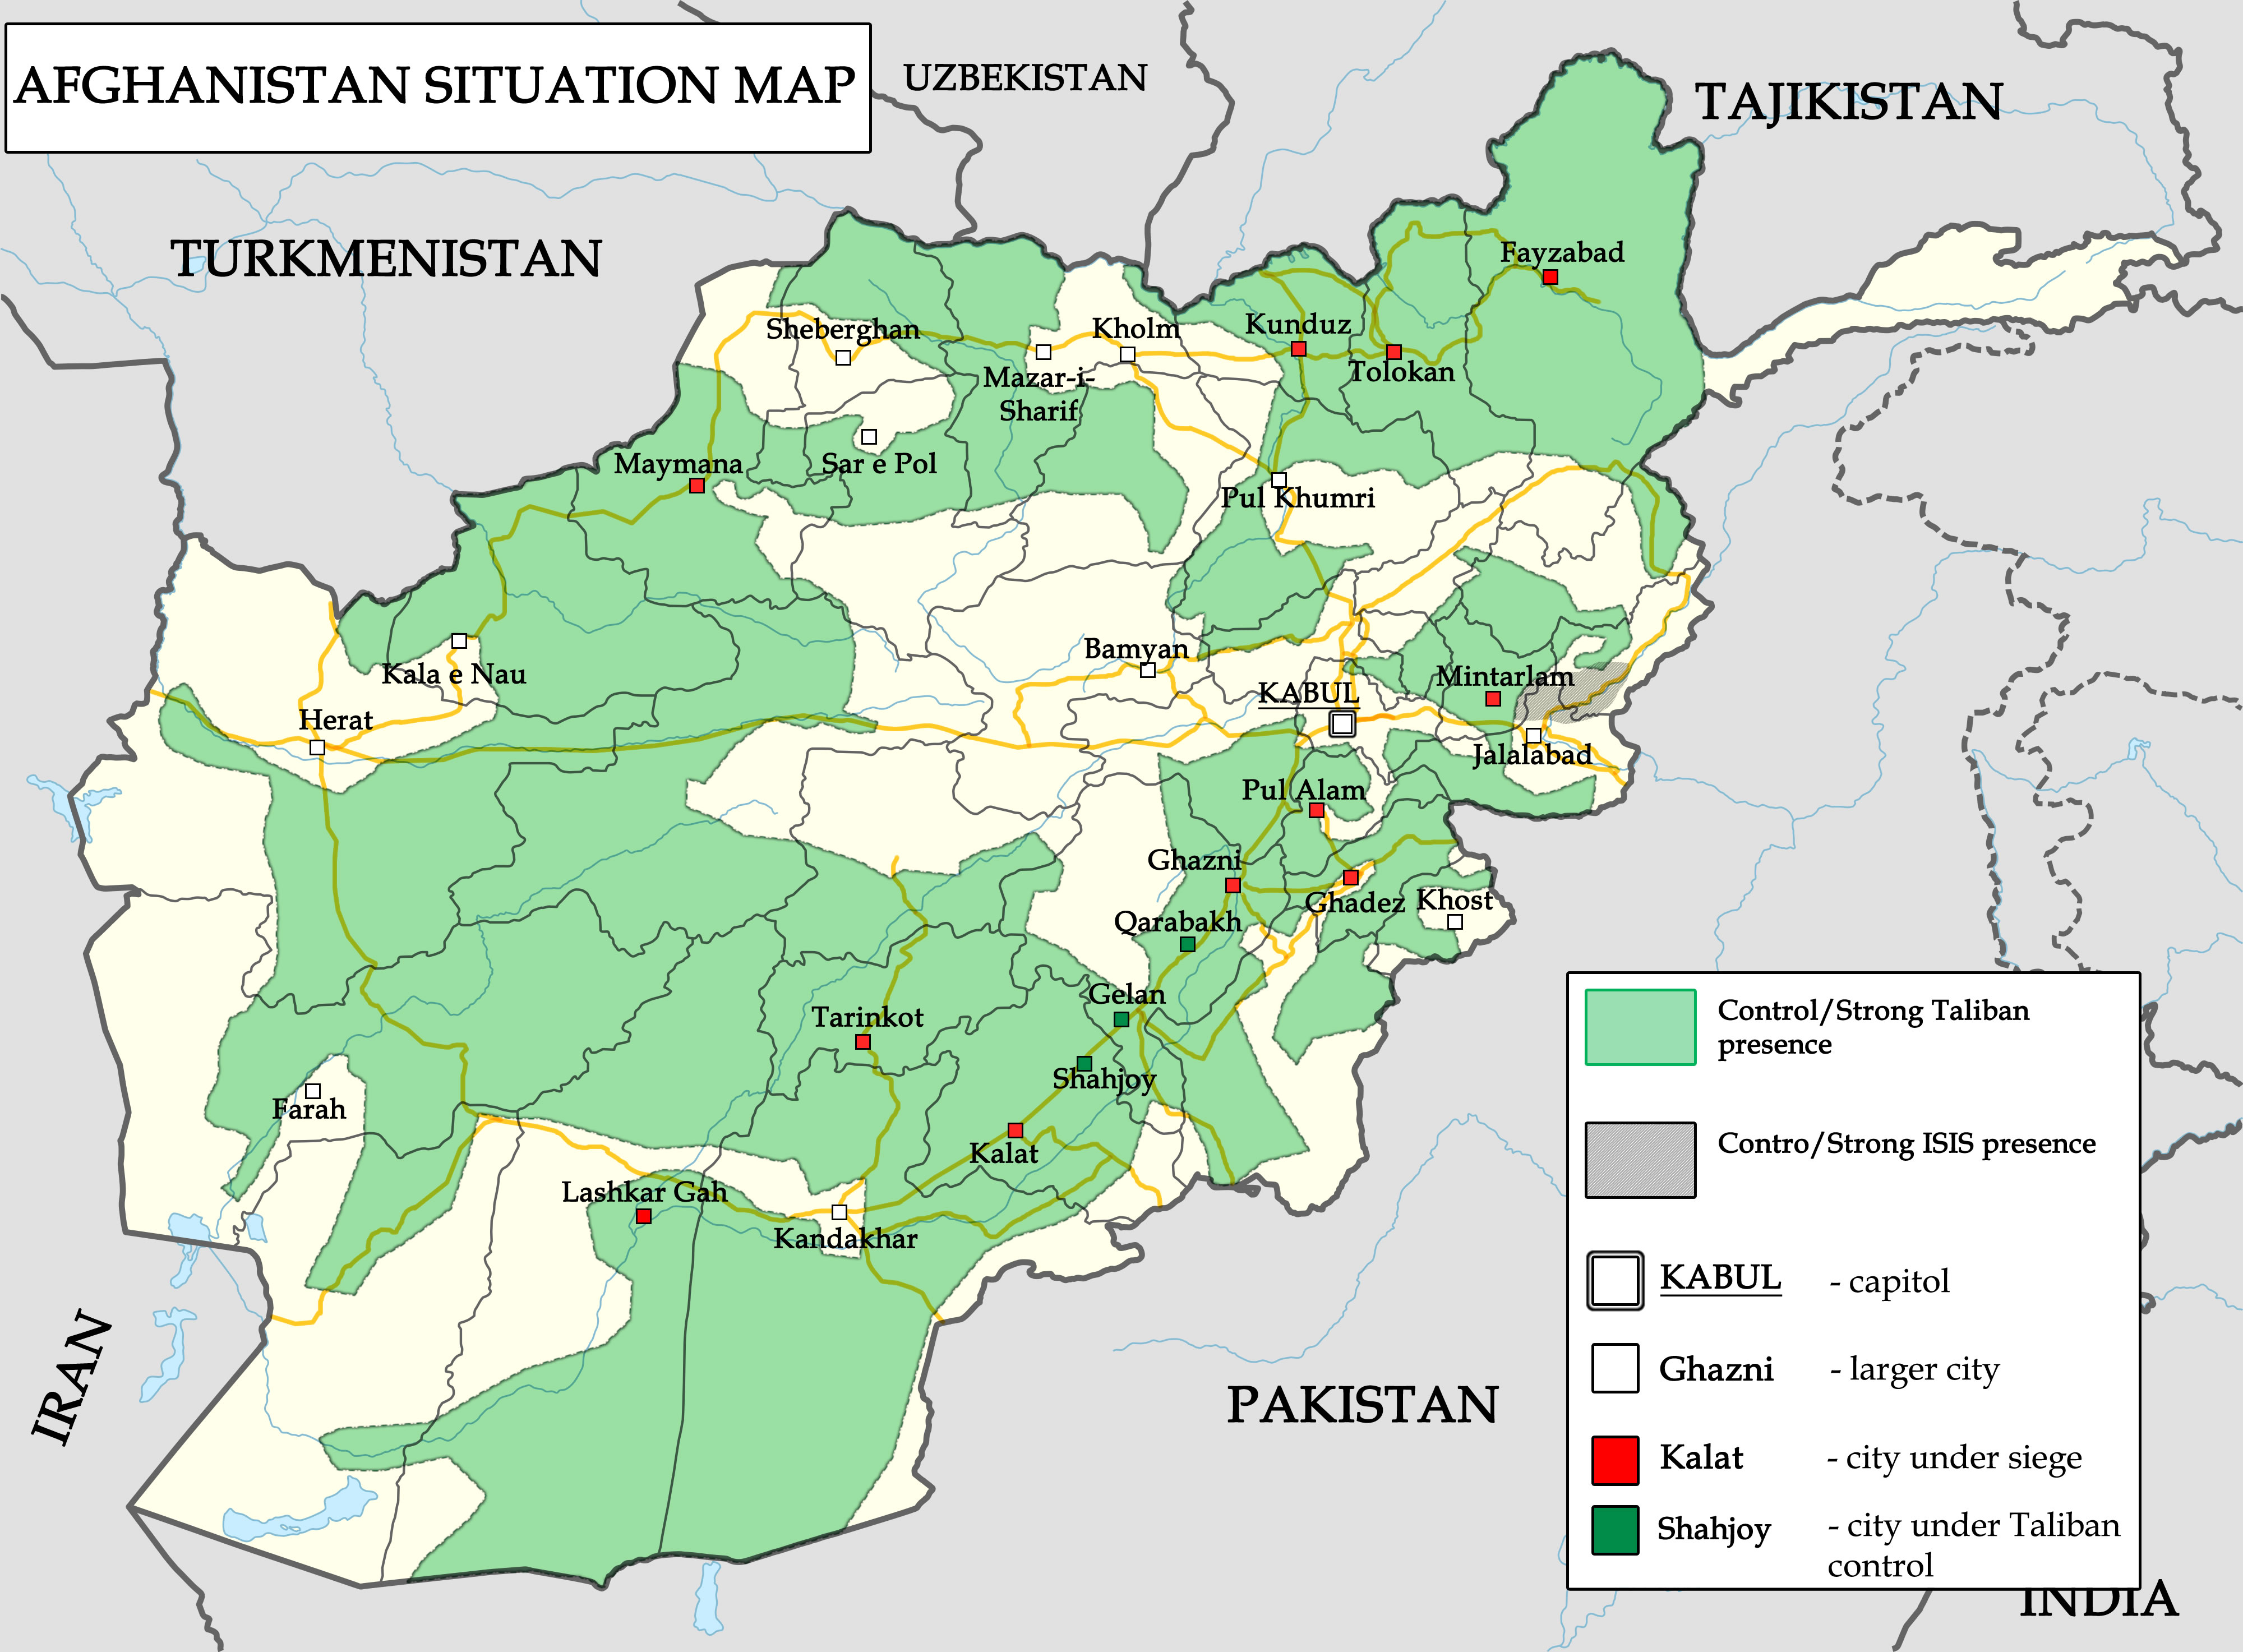 Граница афганистана и россии